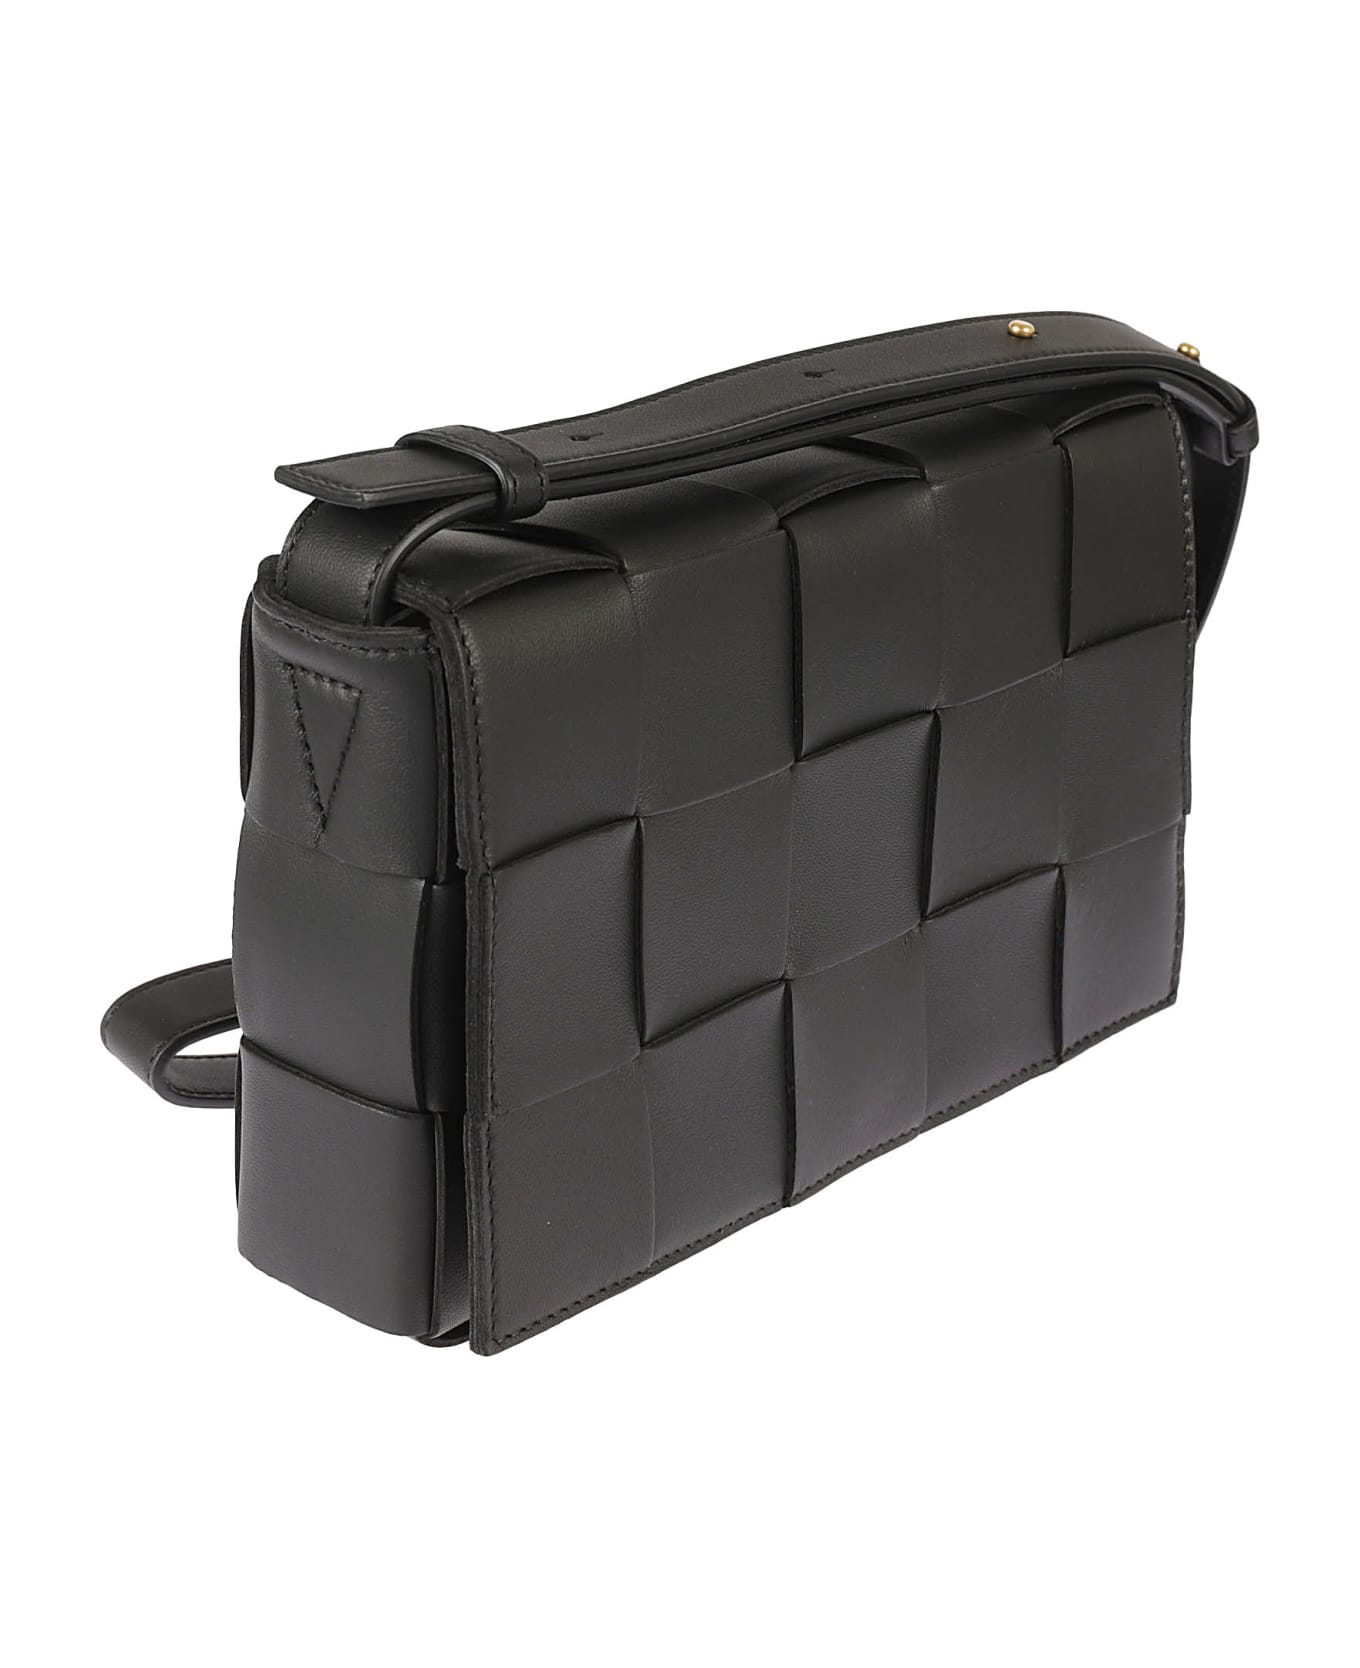 Bottega Veneta Small Cassette Shoulder Bag - Black/Gold